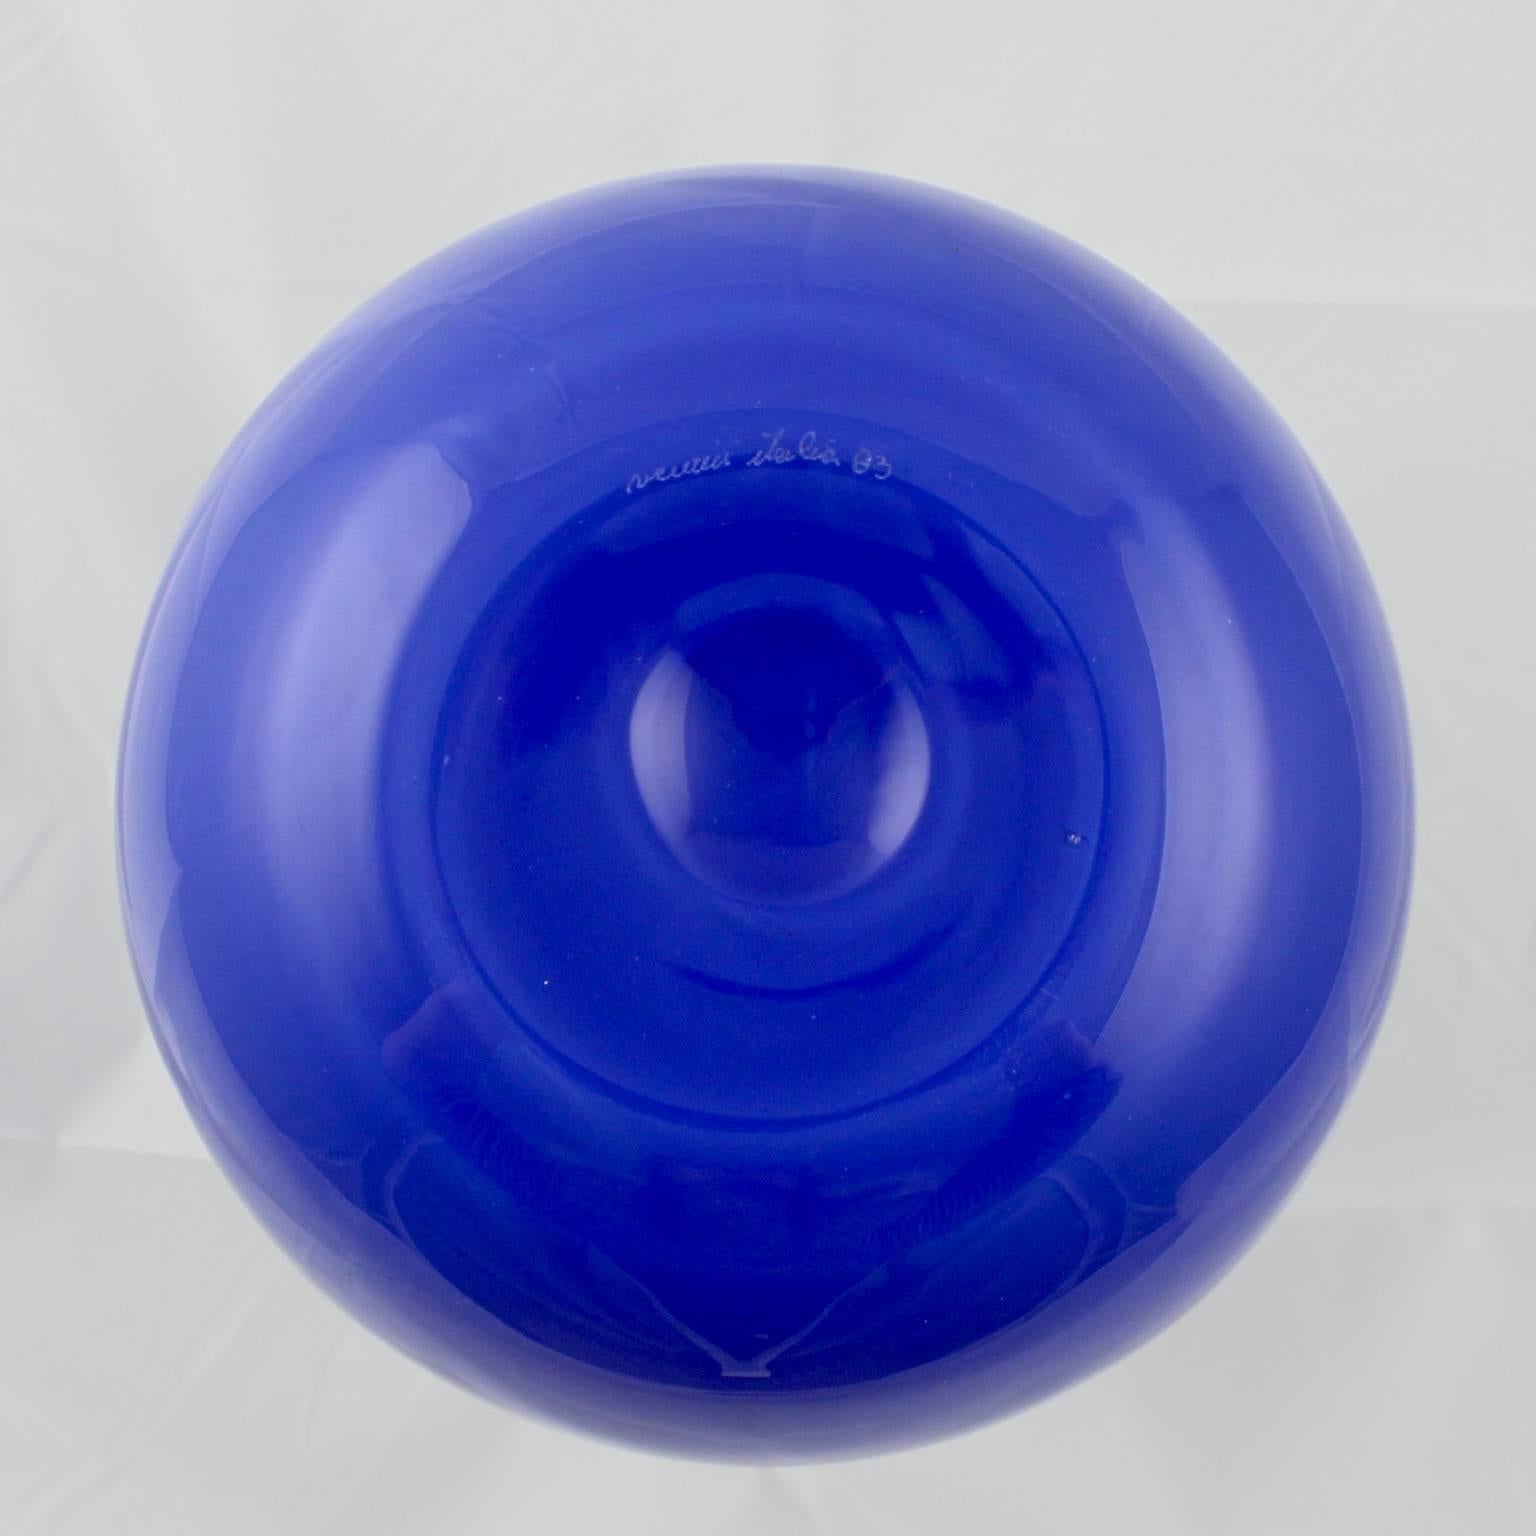 Blown Glass Venini Incalmo Two-Tone Blue Italian Art Glass Vase for Vetri Murano, 1983